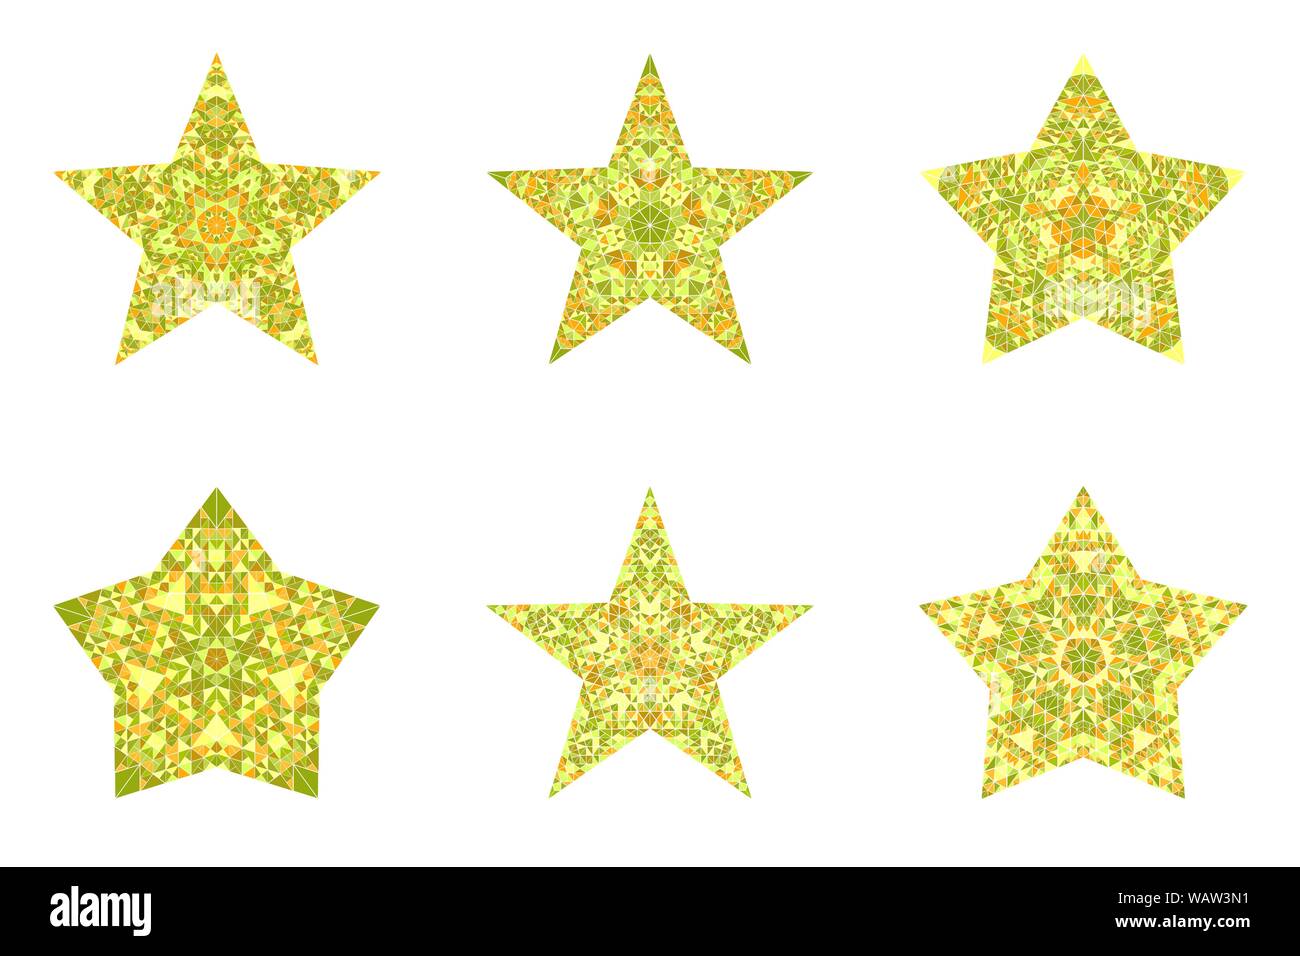 Abstrakte Mosaikfliesen star logo Vorlage Sammlung - Dekorative geometrische Geometrische vieleckige vector Designs elementss Stock Vektor